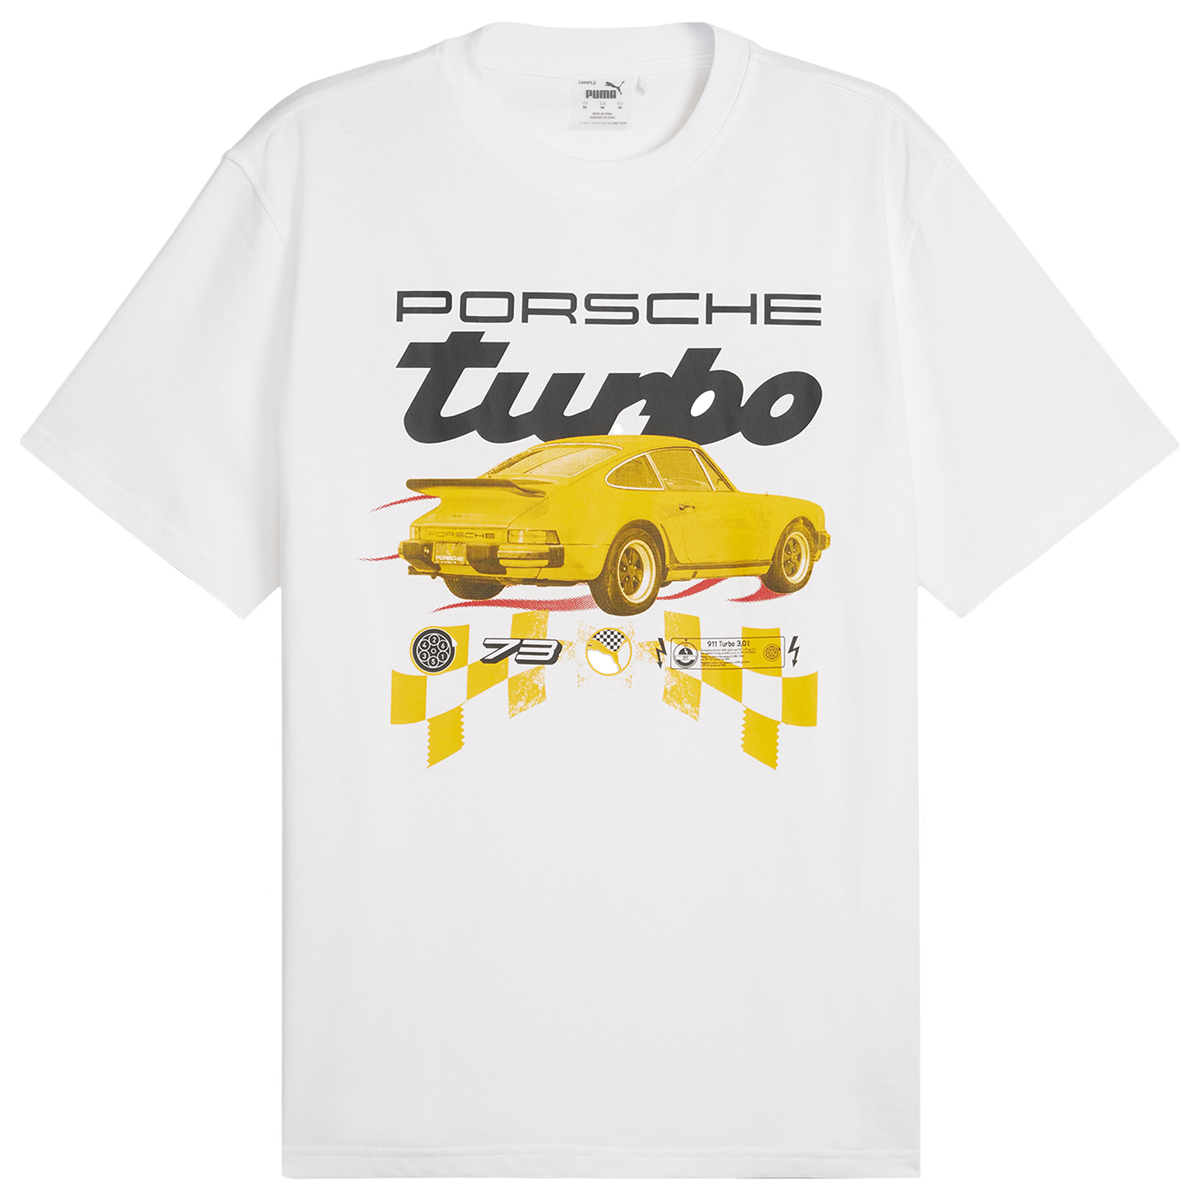 Lamelo-Ball-Puma-MB-03-Porsche-Shirt